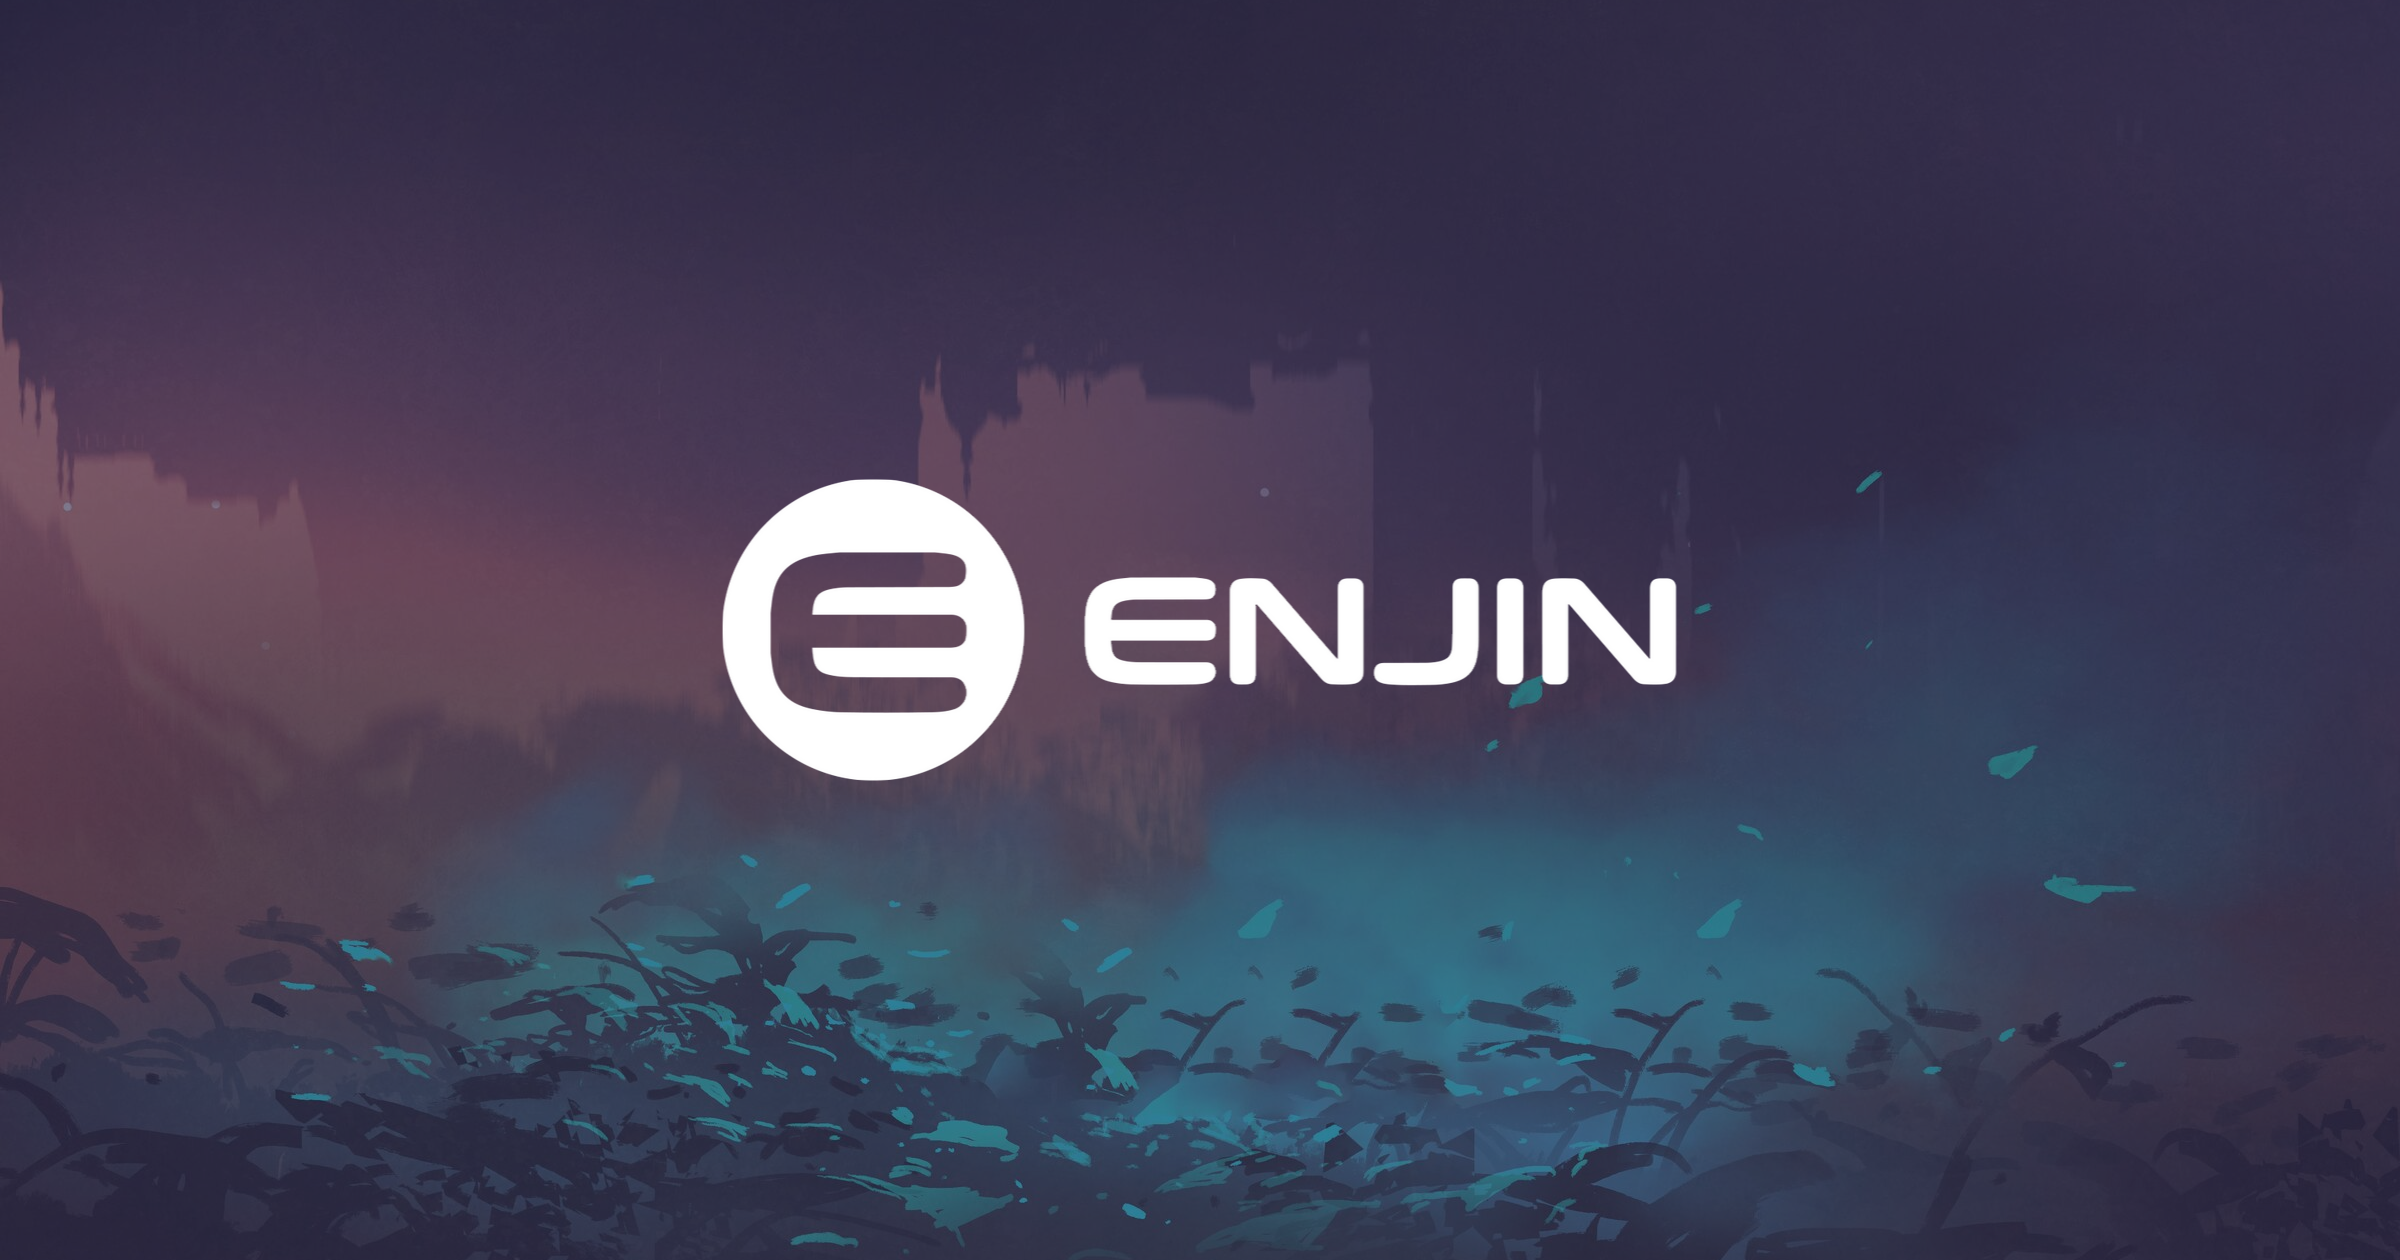 ਤੋਂ 200 ਮਿਲੀਅਨ NFTs ਚਲੇ ਗਏ Ethereum Blockchain ਨੂੰ Enjin ਕਰਨ ਲਈ